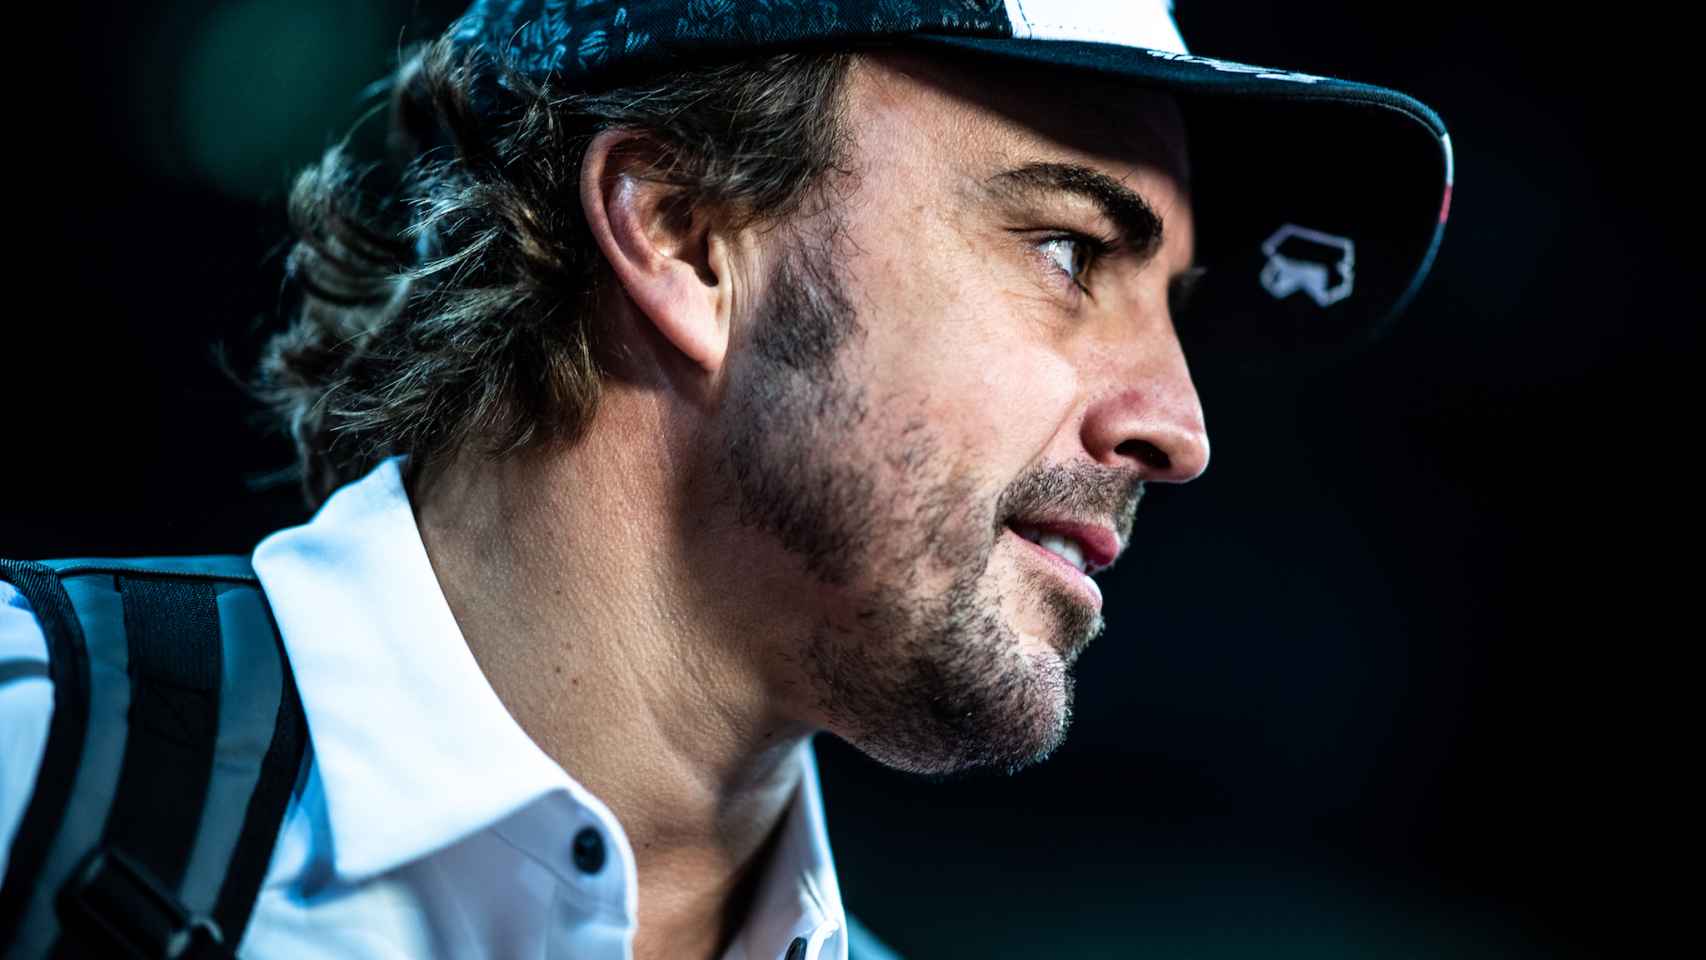 Fernando Alonso, en el Dakar 2020